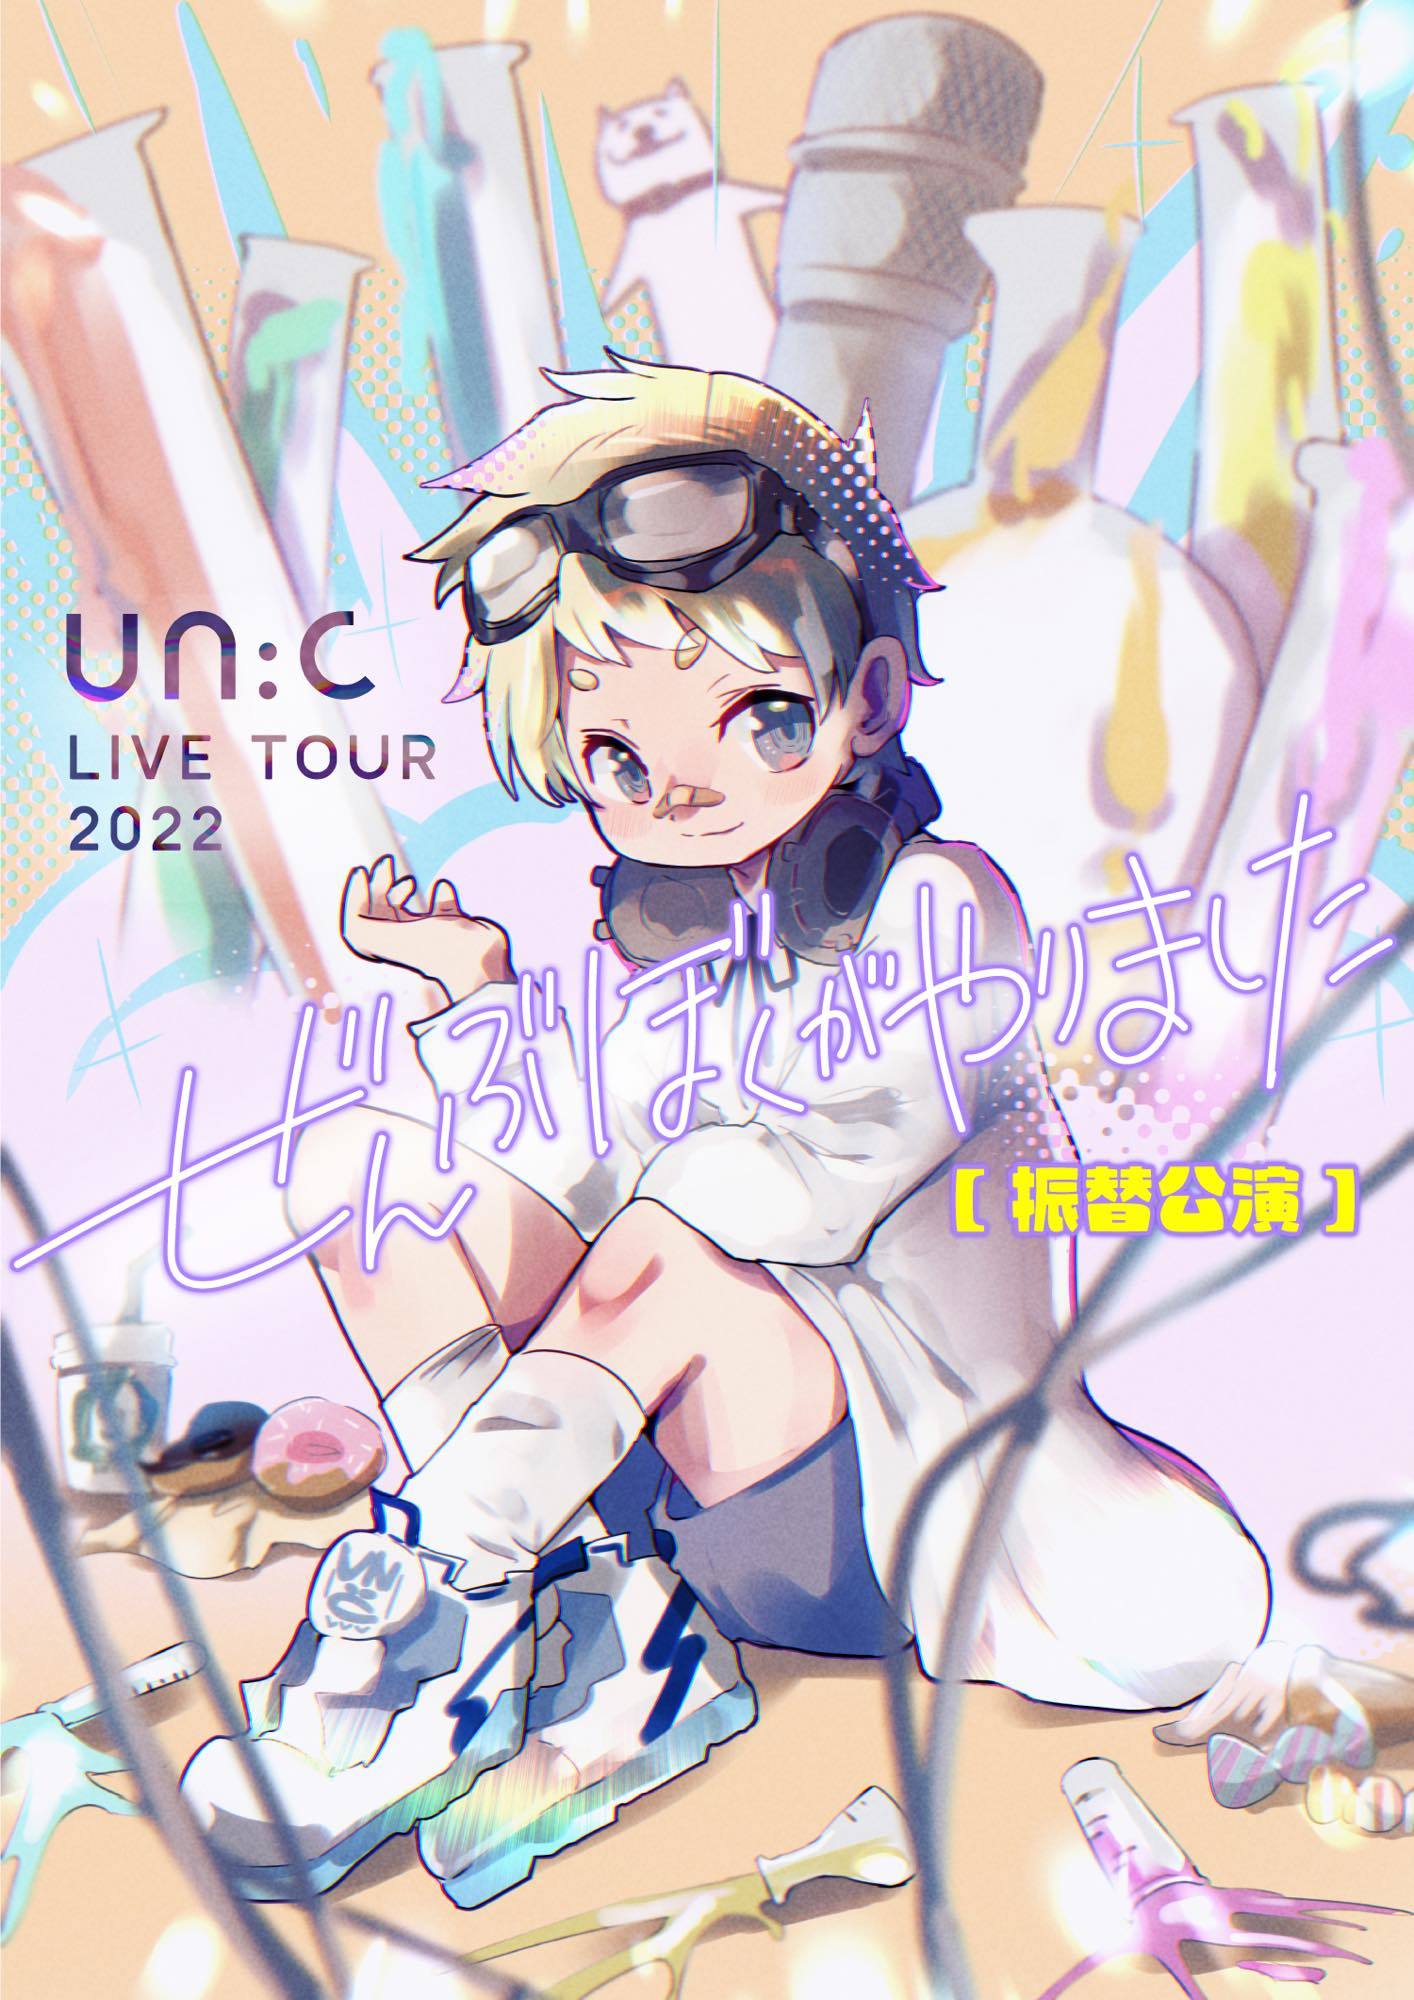 un:c LIVE TOUR 2022 -ぜんぶぼくがやりました-【振替公演】 　Illustration by un:c